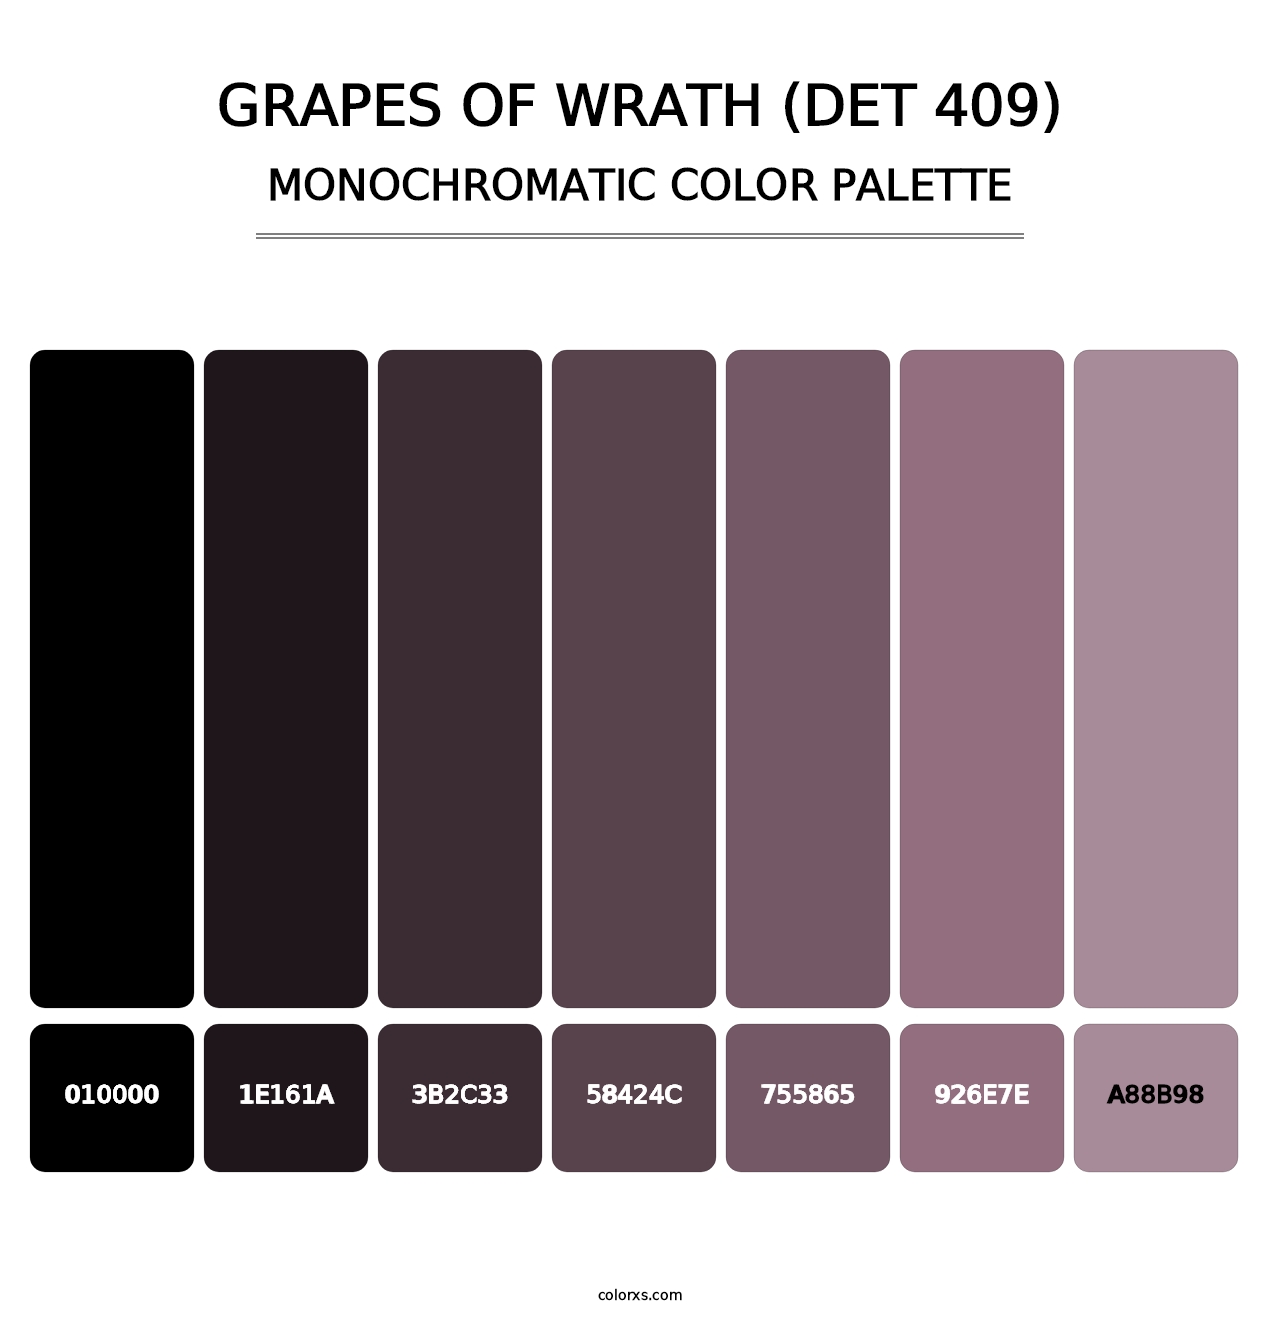 Grapes of Wrath (DET 409) - Monochromatic Color Palette